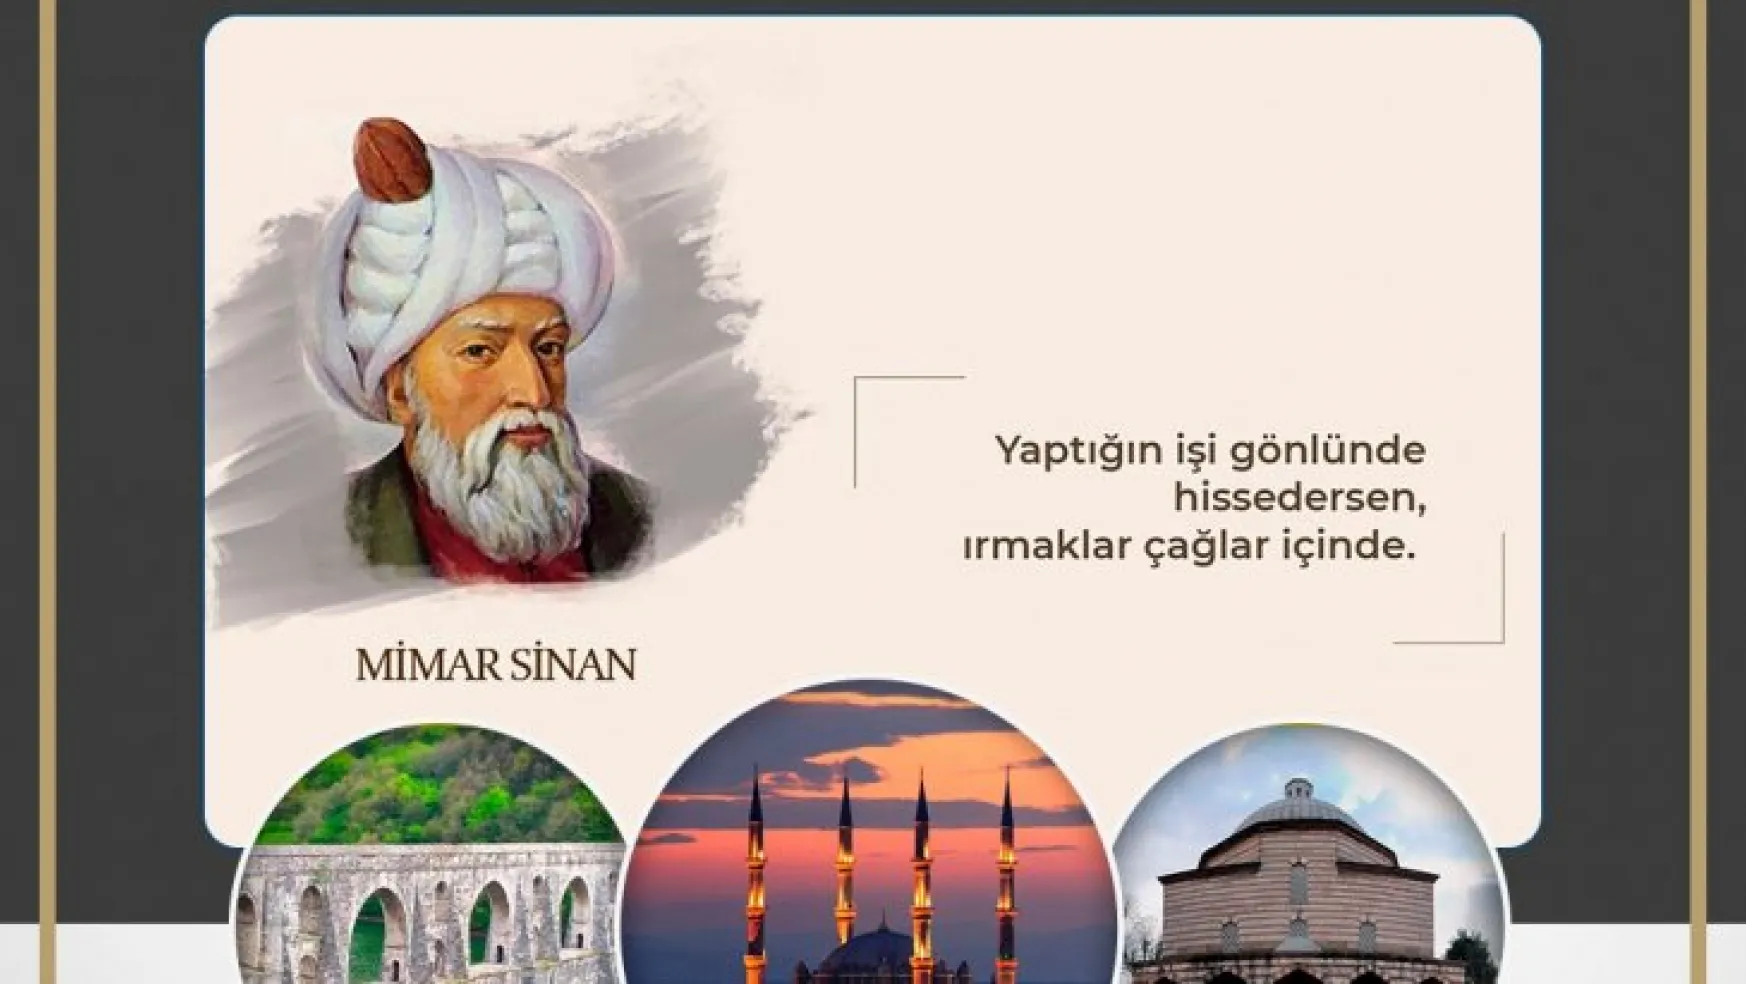 Kayserili iş insanları 2022 yılını 'Mimar Sinan Yılı' ilan etti.